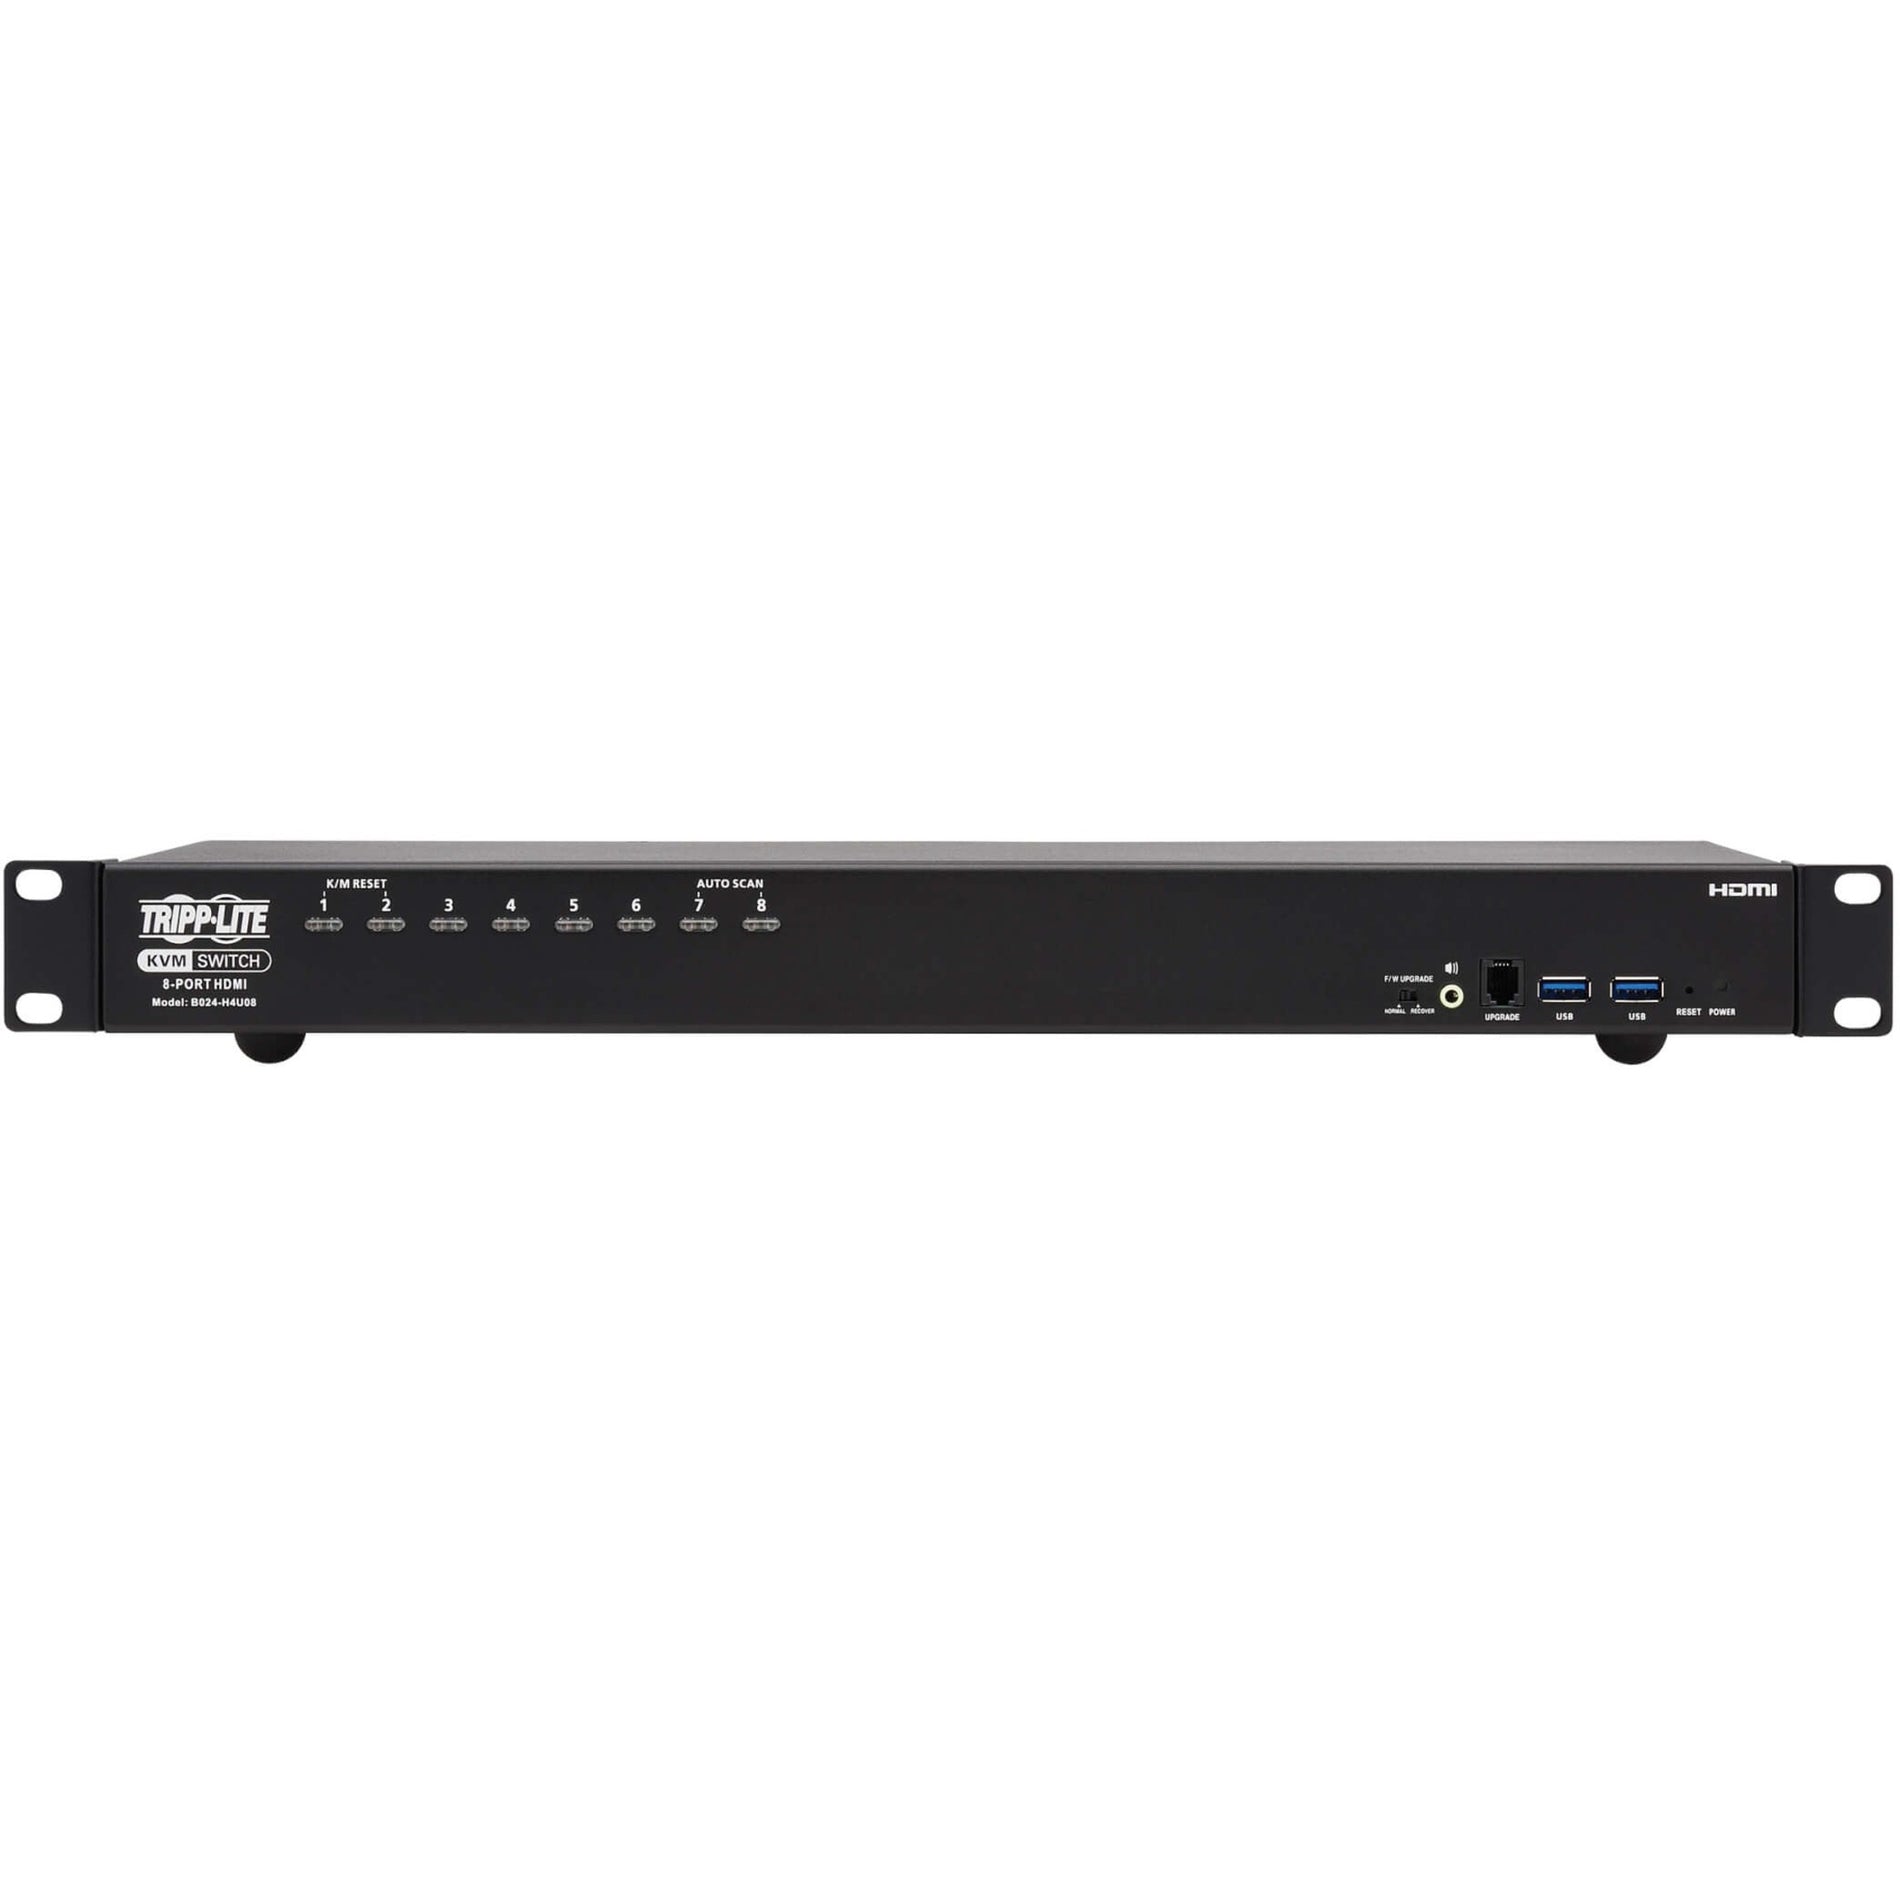 Tripp Lite B024-H4U08 8-Port HDMI/USB KVM Switch, 1U, 4K Resolution, TAA Compliant